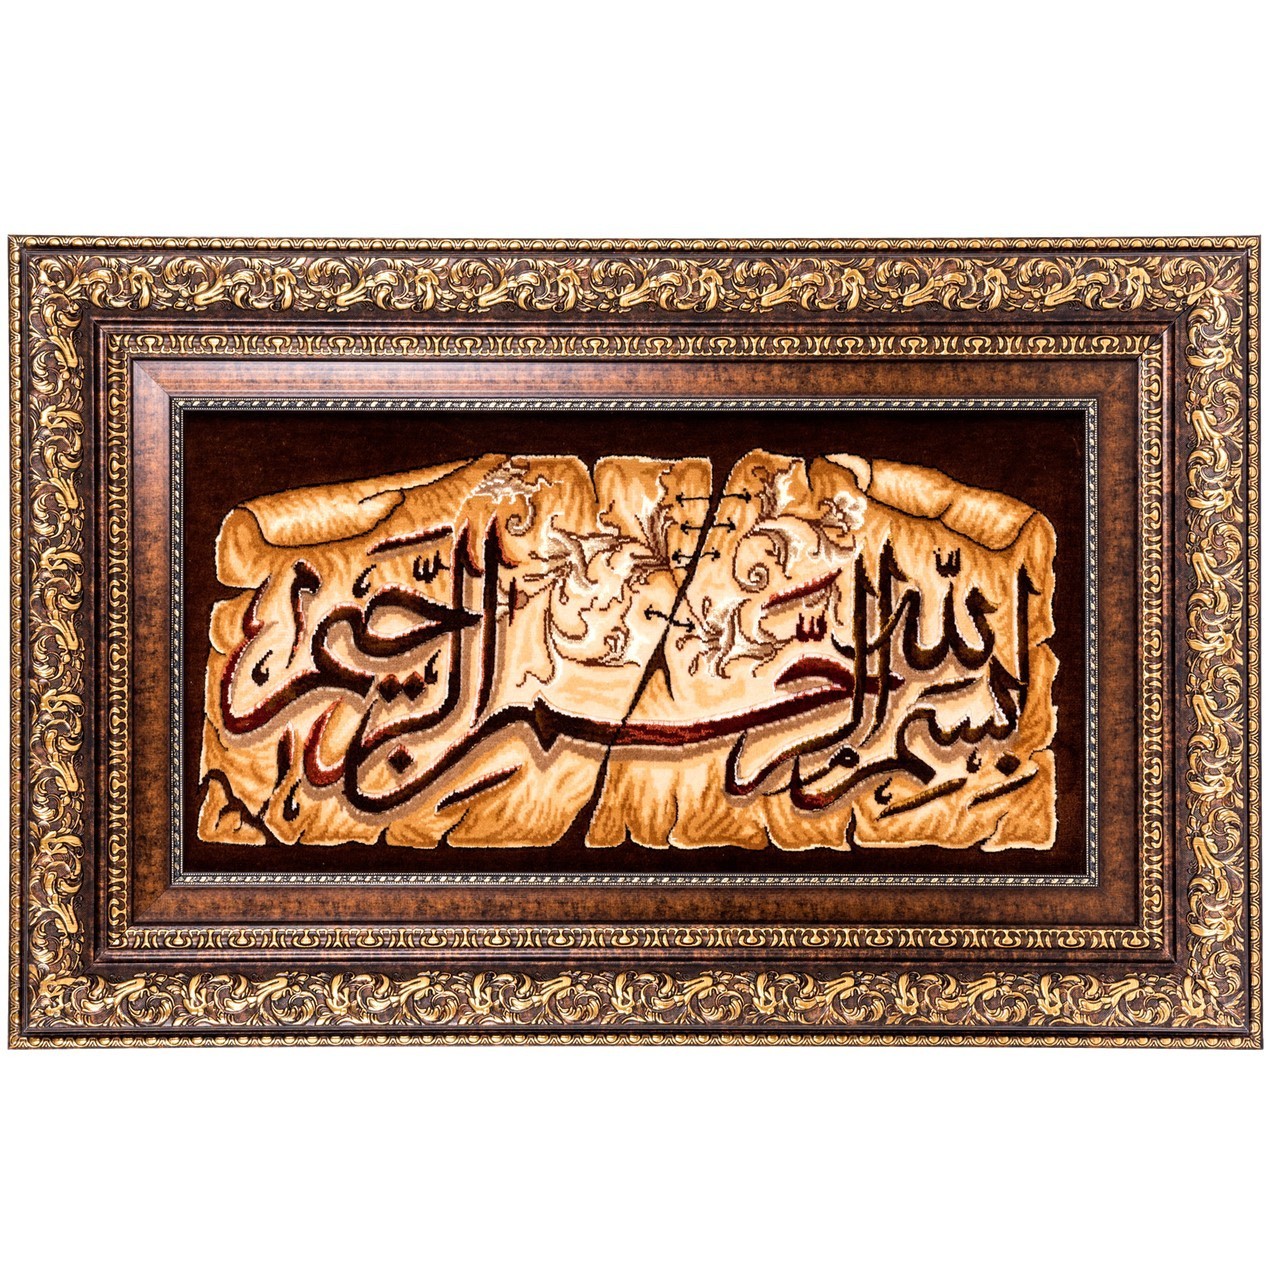 تابلو فرش دستباف طرح بسم الله الرحمن الرحیم کد 901175